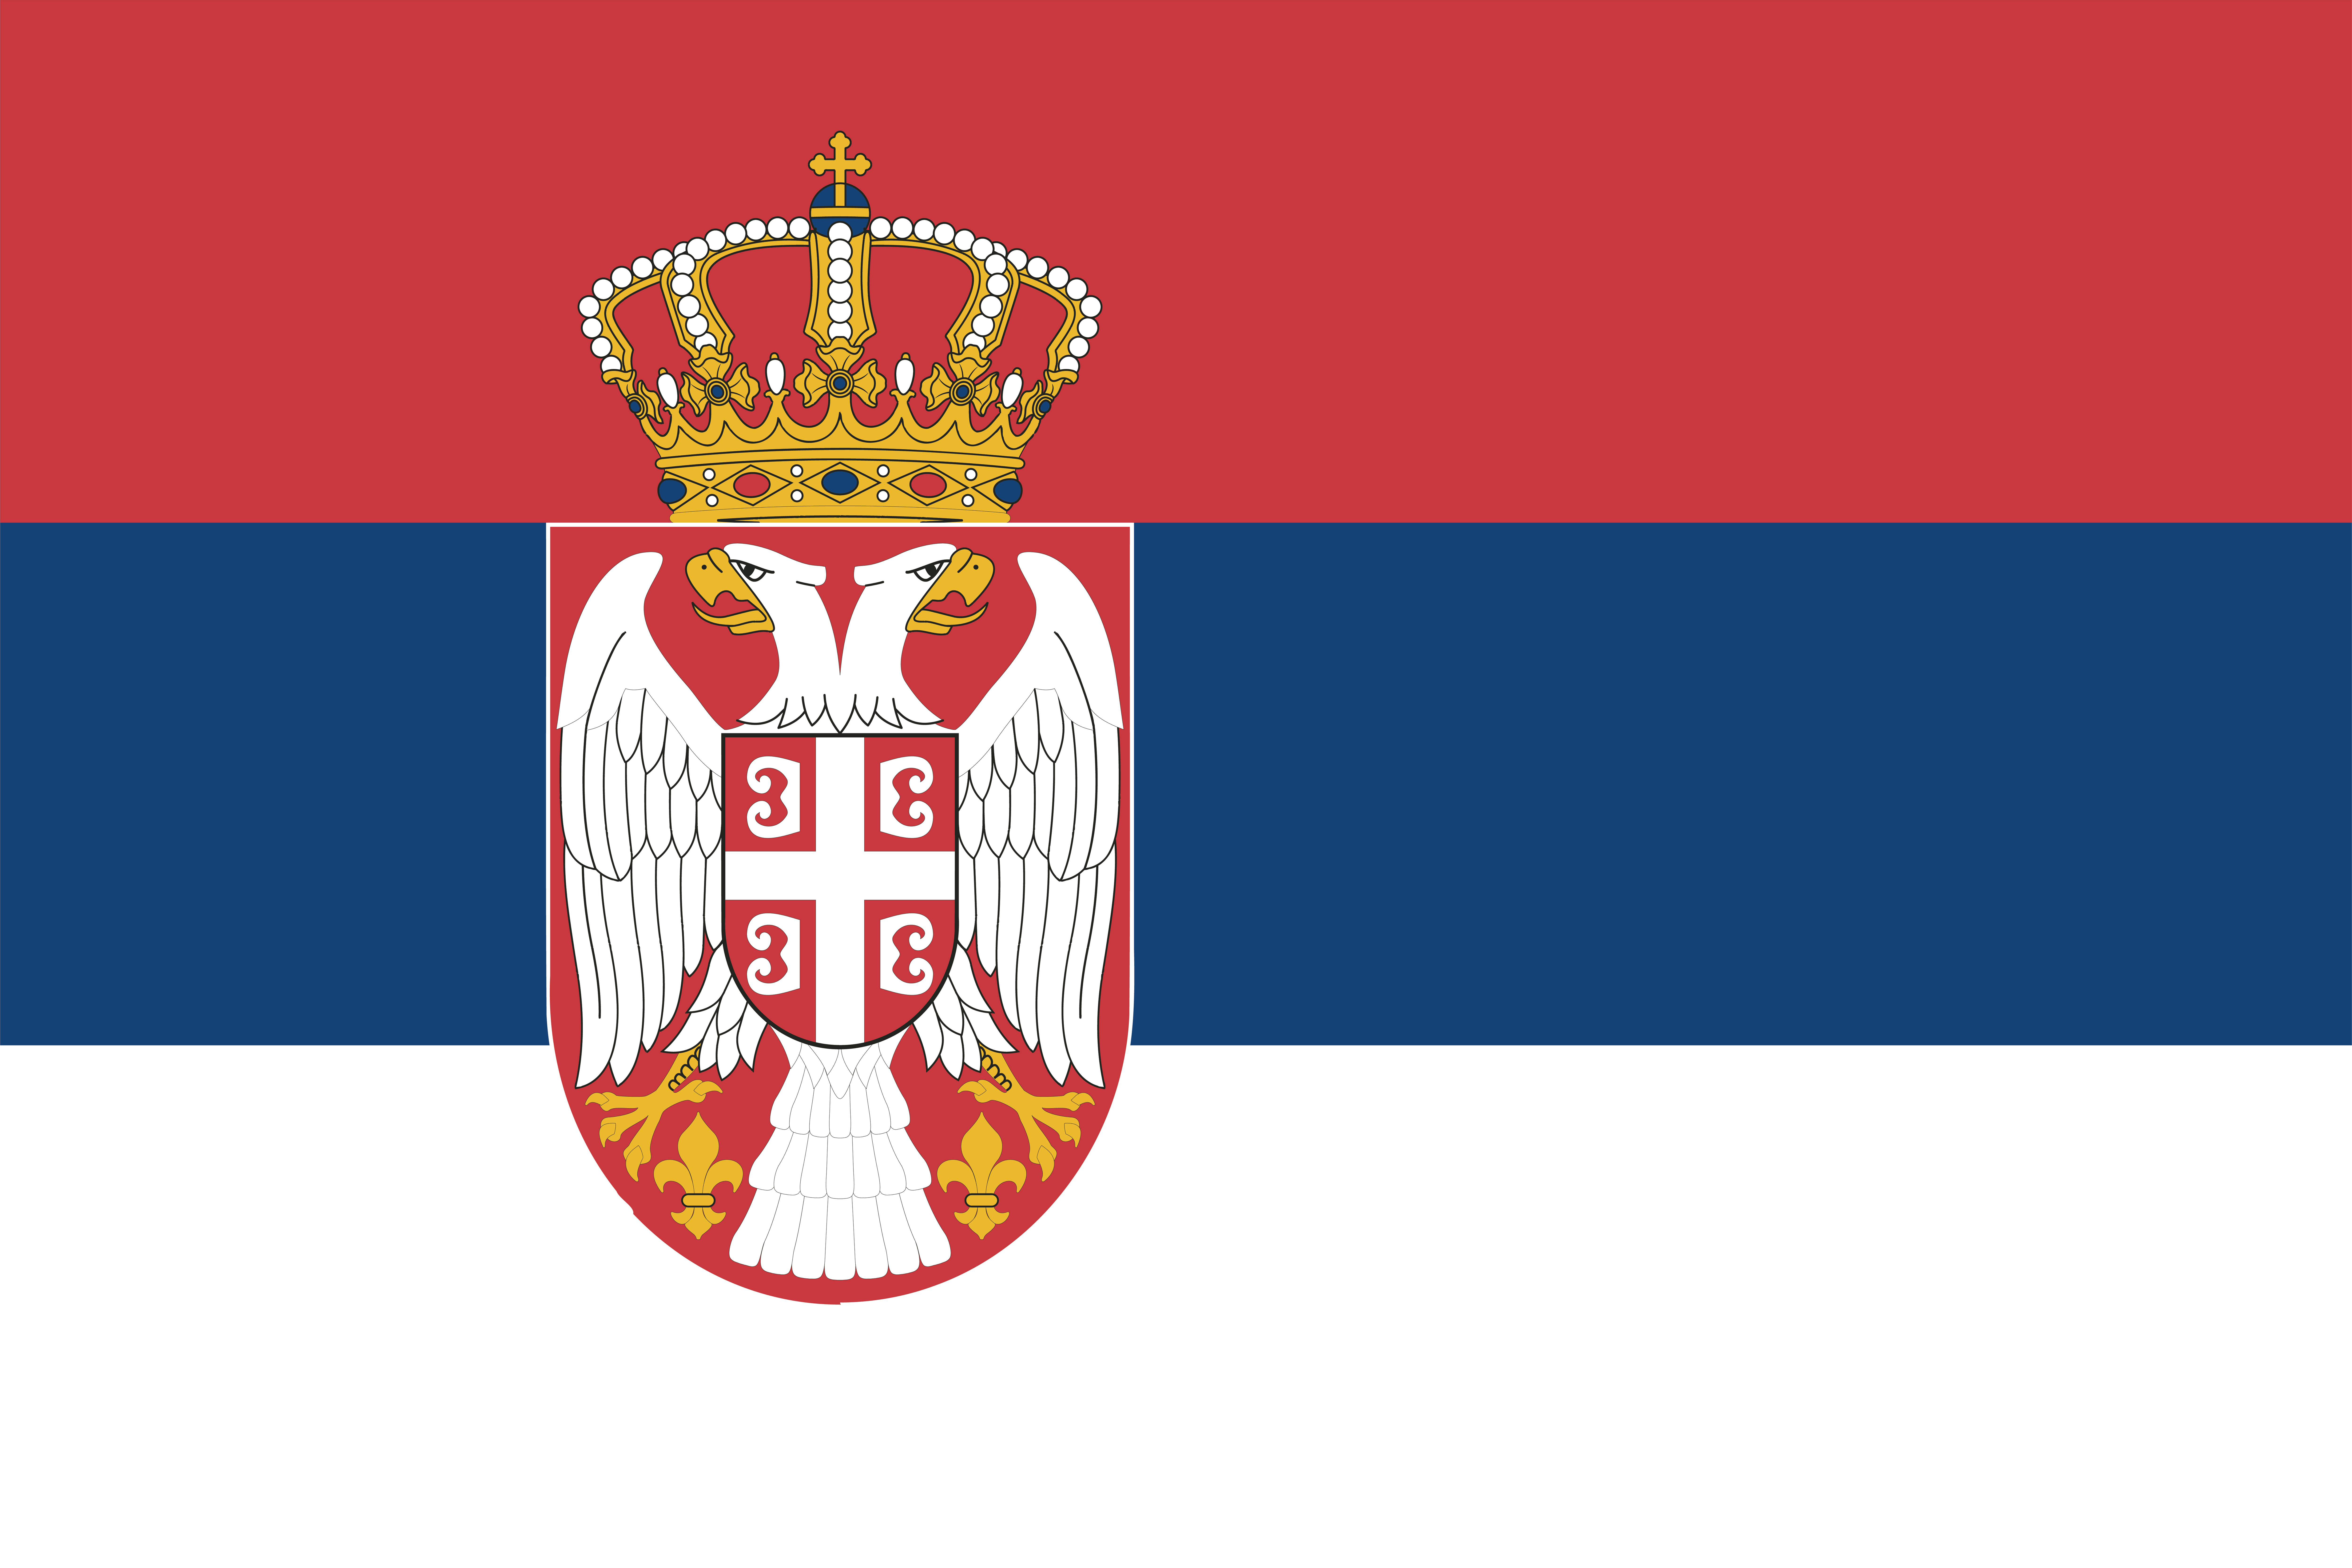 Bandeira da Sérvia.